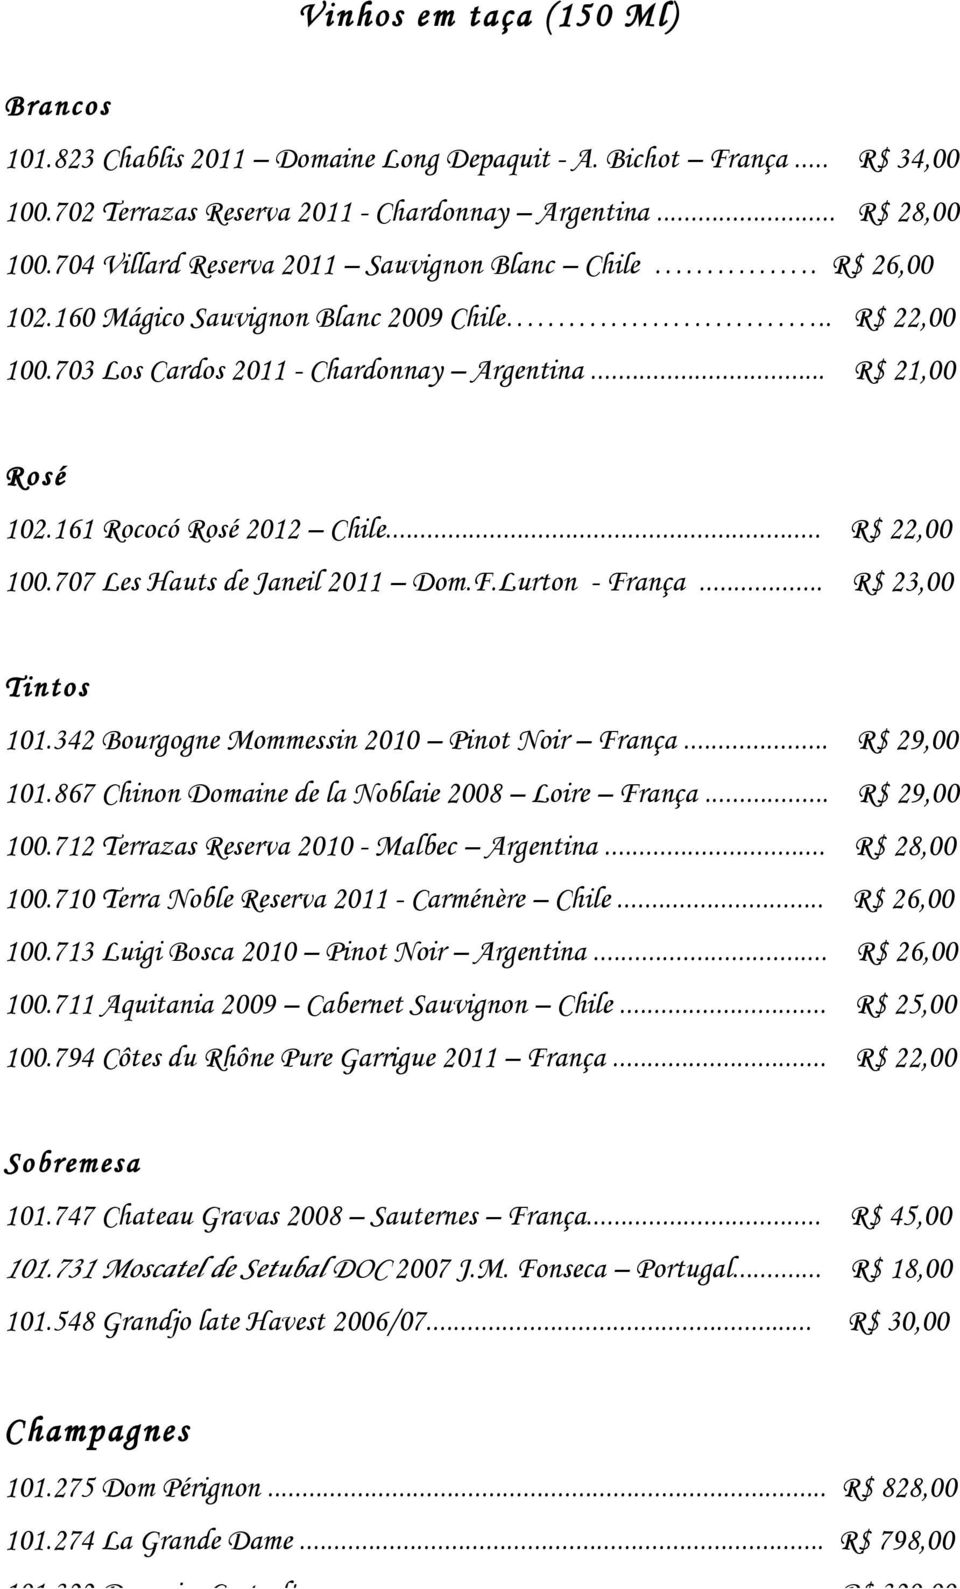 161 Rococó Rosé 2012 Chile... R$ 22,00 100.707 Les Hauts de Janeil 2011 Dom.F.Lurton - França... R$ 23,00 Tintos 101.342 Bourgogne Mommessin 2010 Pinot Noir França... R$ 29,00 101.